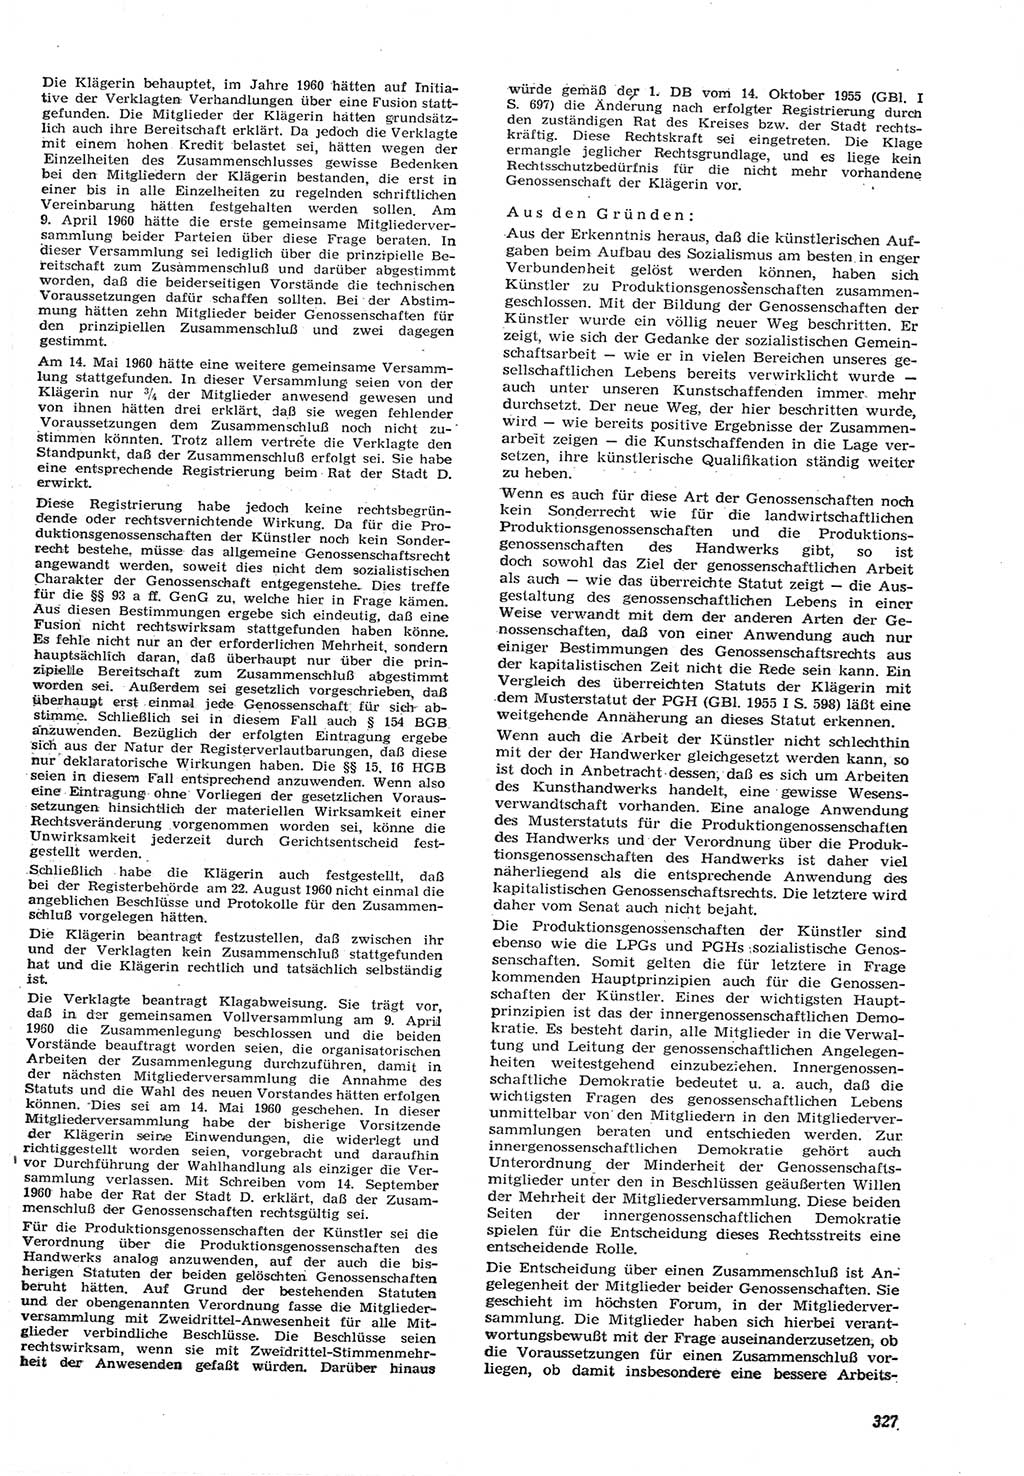 Neue Justiz (NJ), Zeitschrift für Recht und Rechtswissenschaft [Deutsche Demokratische Republik (DDR)], 15. Jahrgang 1961, Seite 327 (NJ DDR 1961, S. 327)